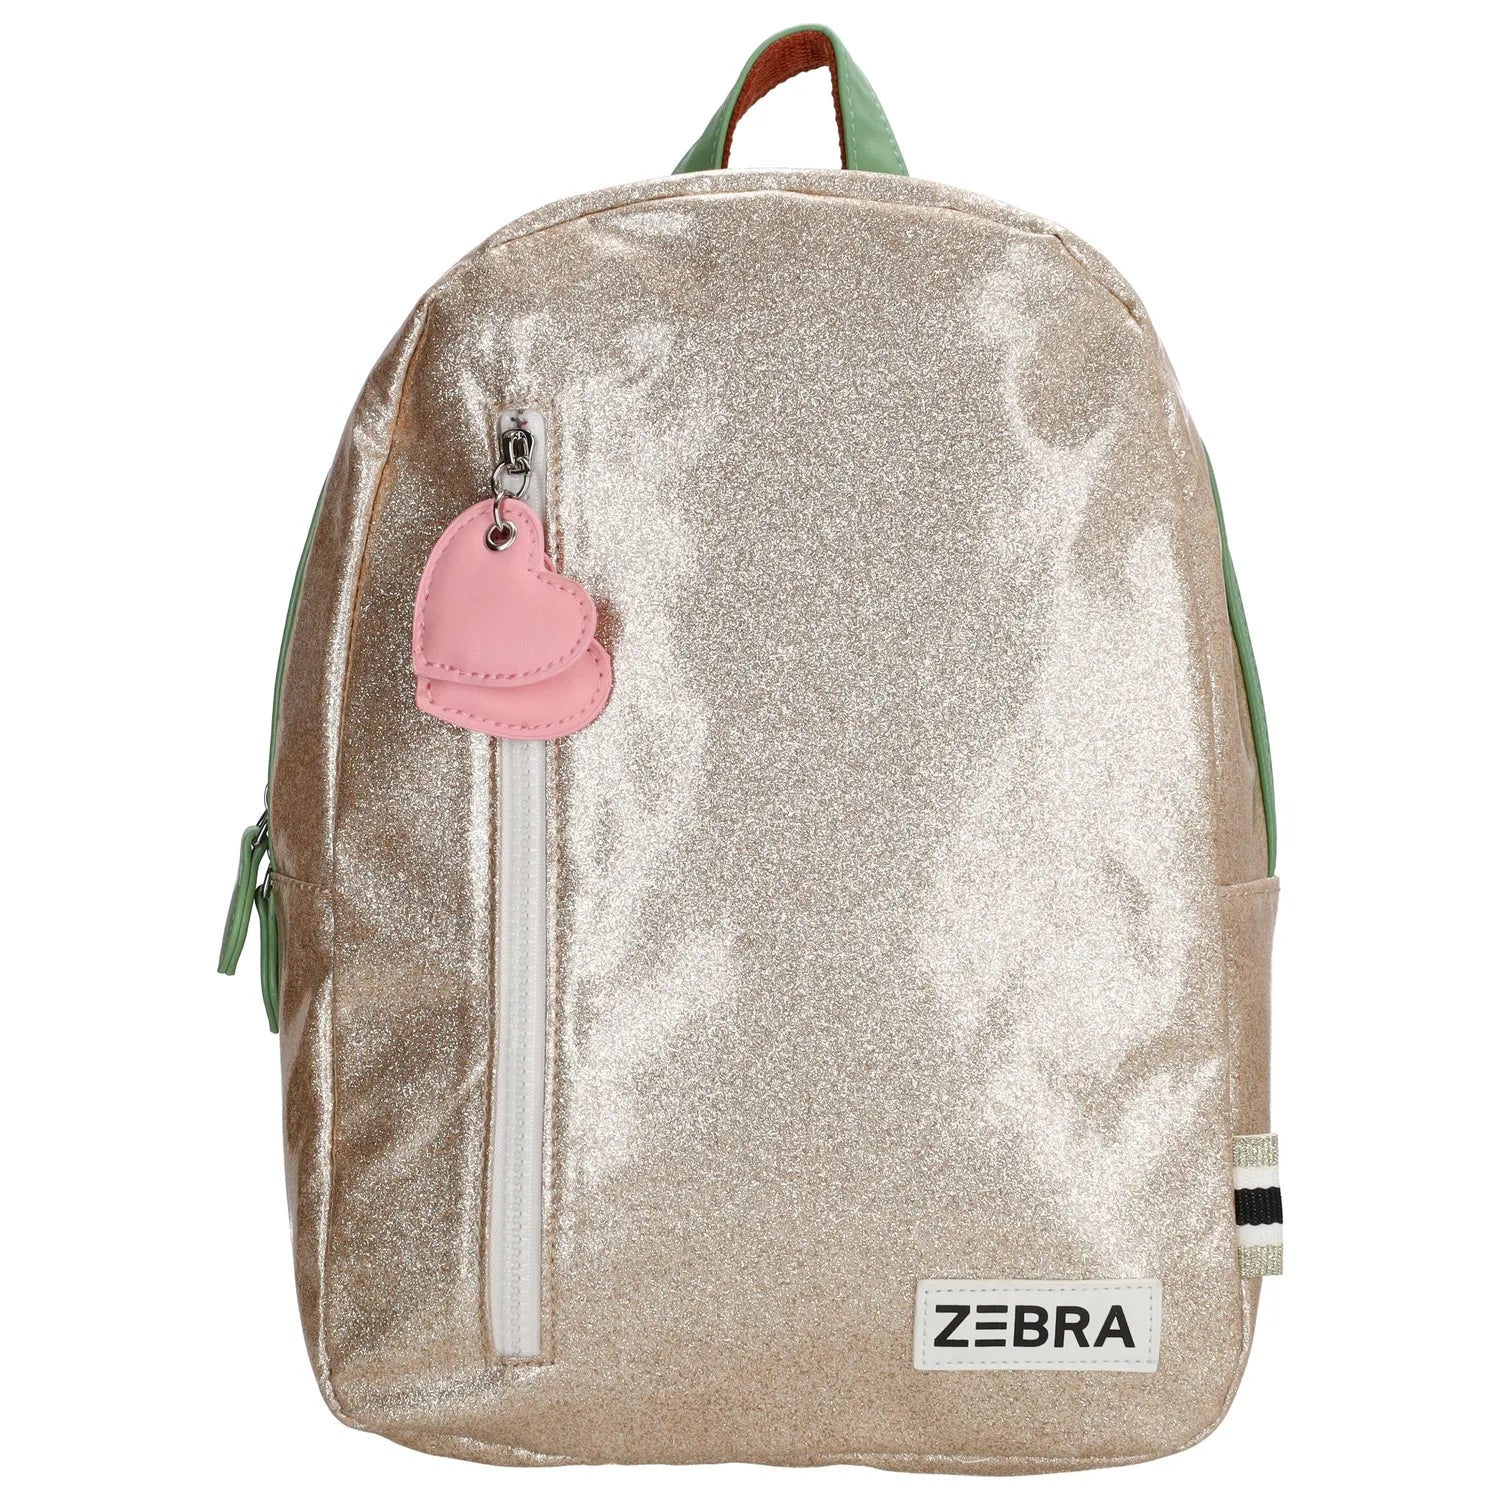 Zebra Backpack (M) - Gold metallic Leo